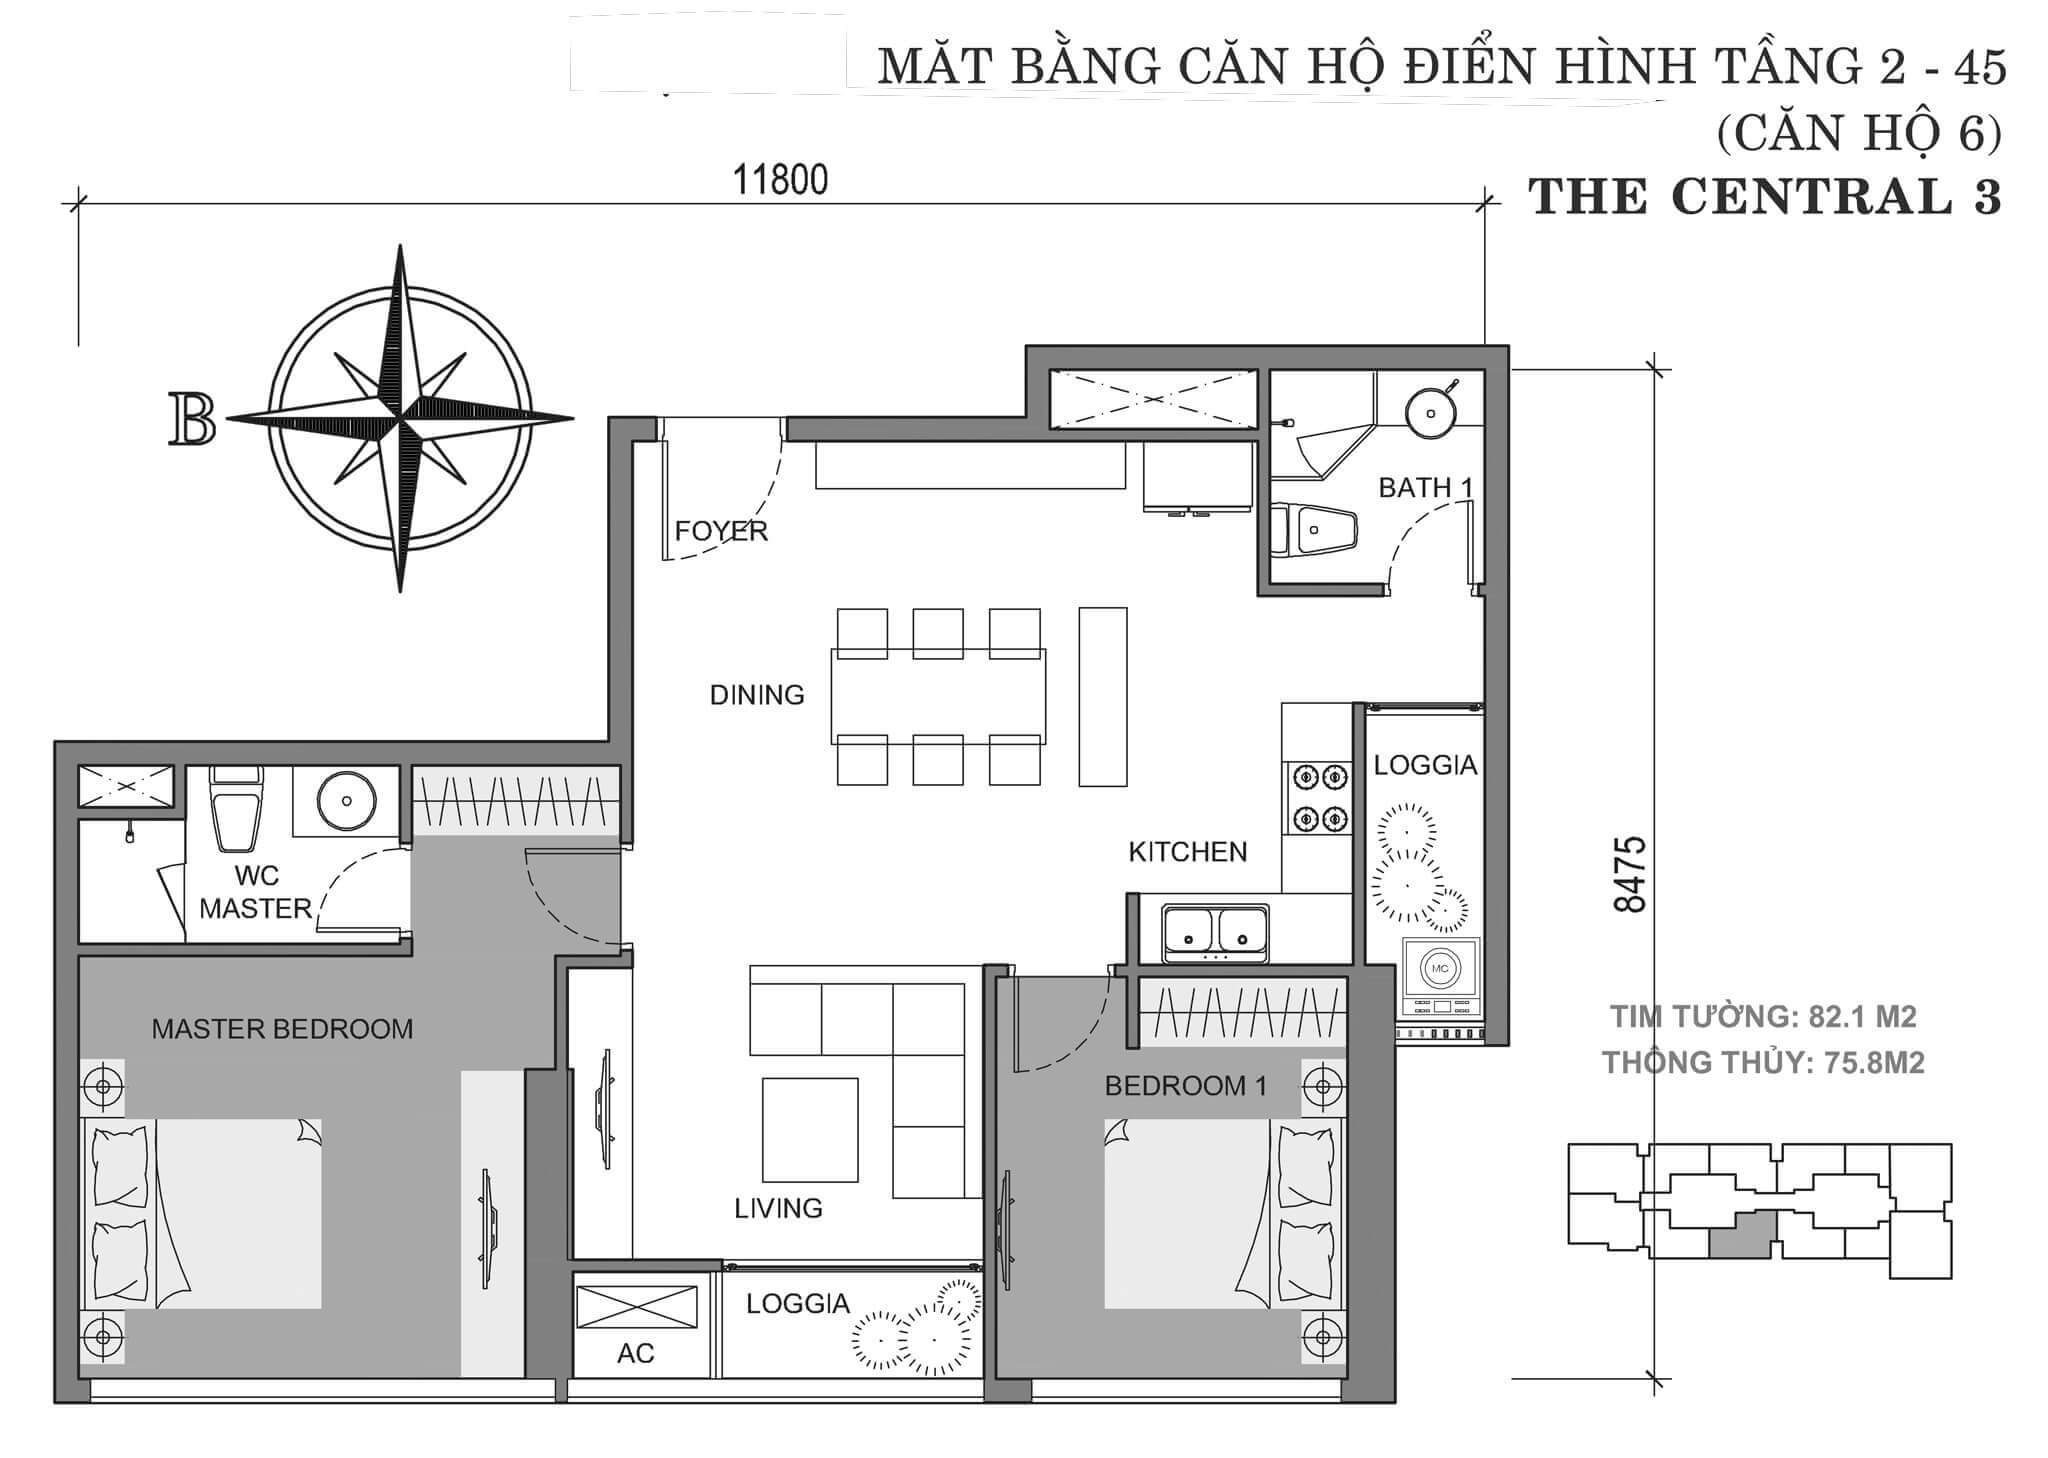 layout căn hộ số 6 tòa Central 3 tầng 2-45  